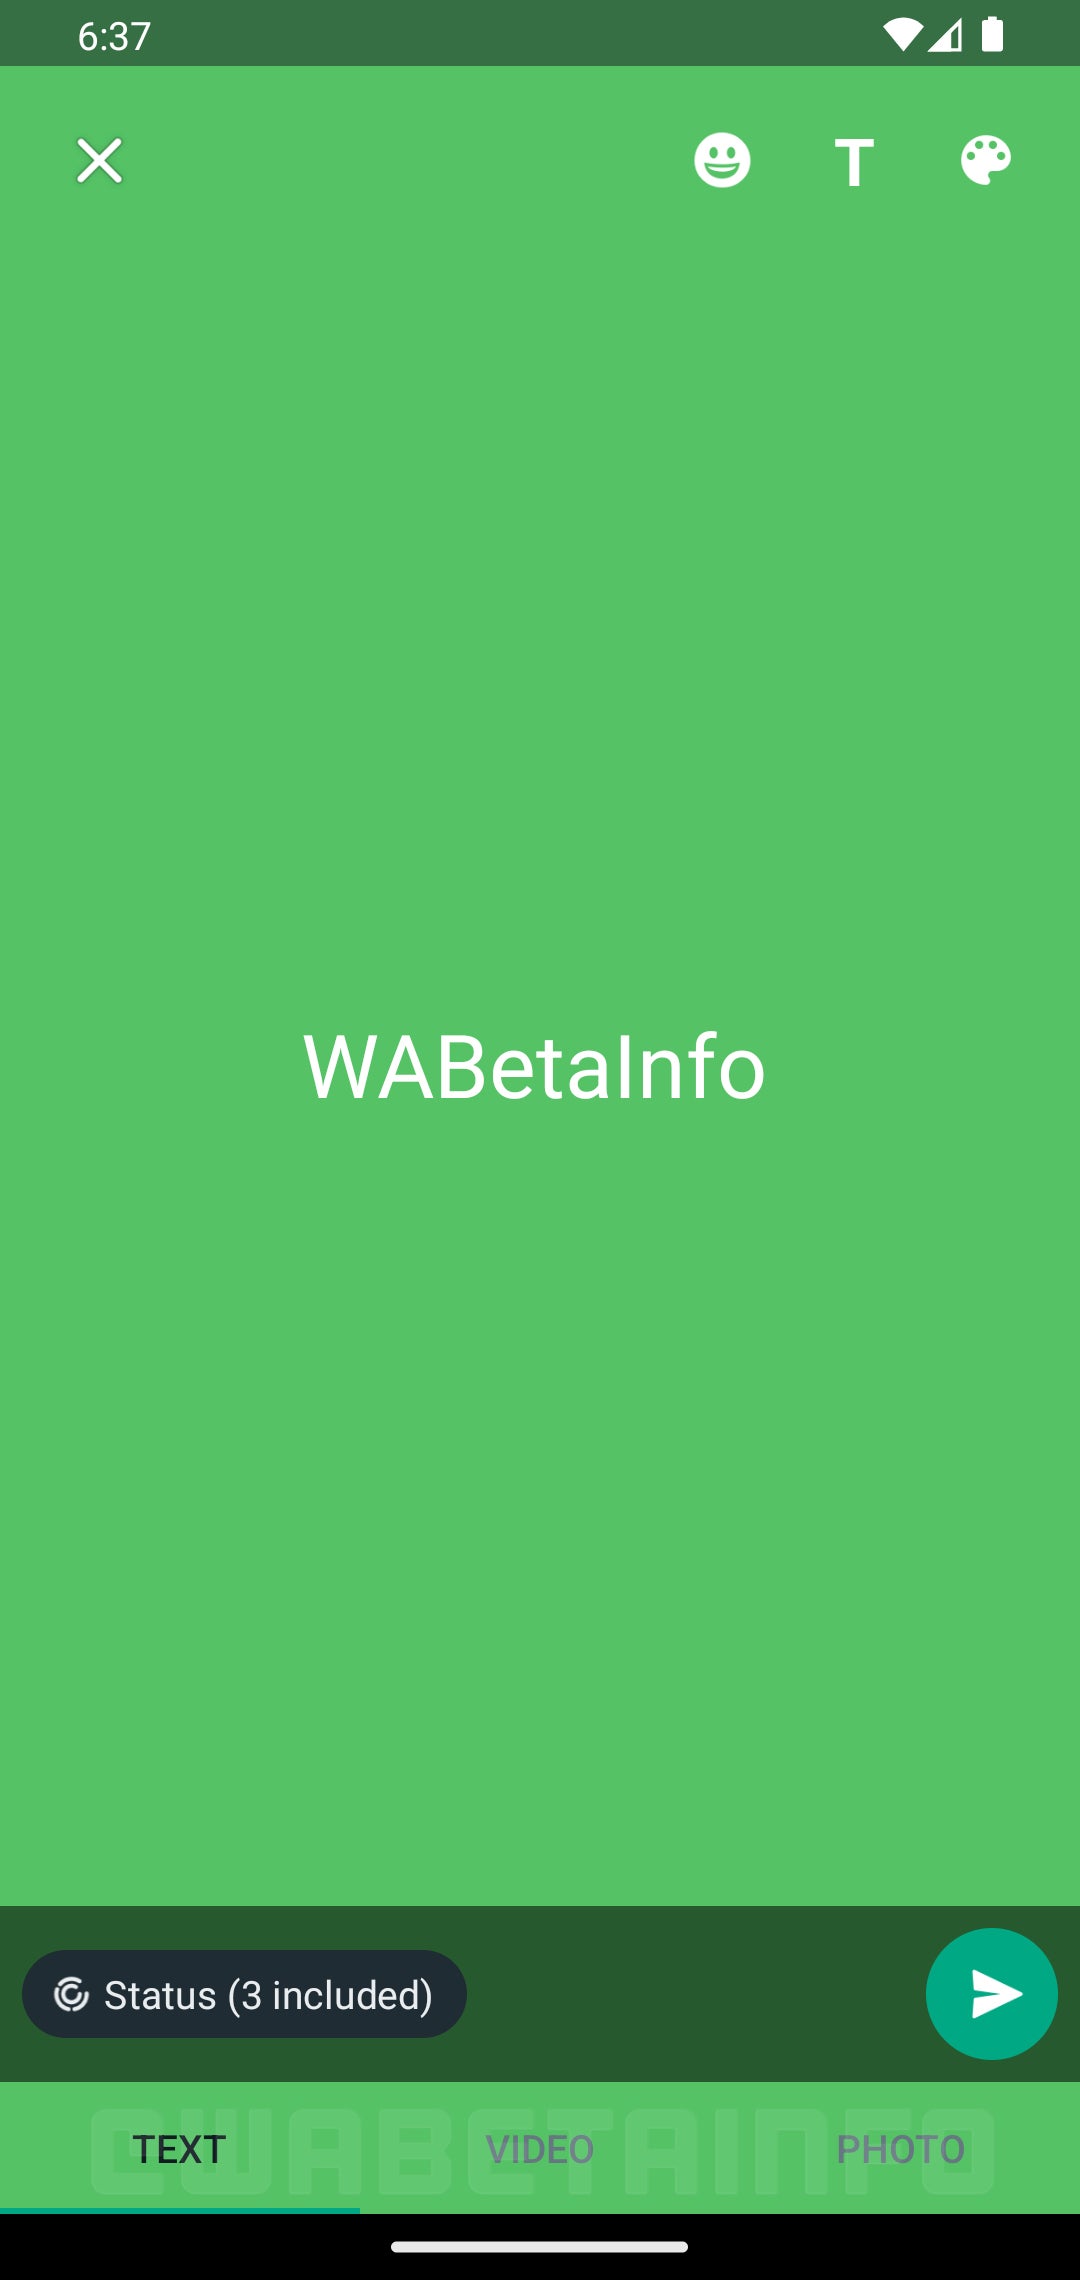 Resim Kredisi – WABetaInfo - WhatsApp, metin tabanlı durum güncellemelerini kolayca paylaşmak için yeni bir arayüzü test ediyor